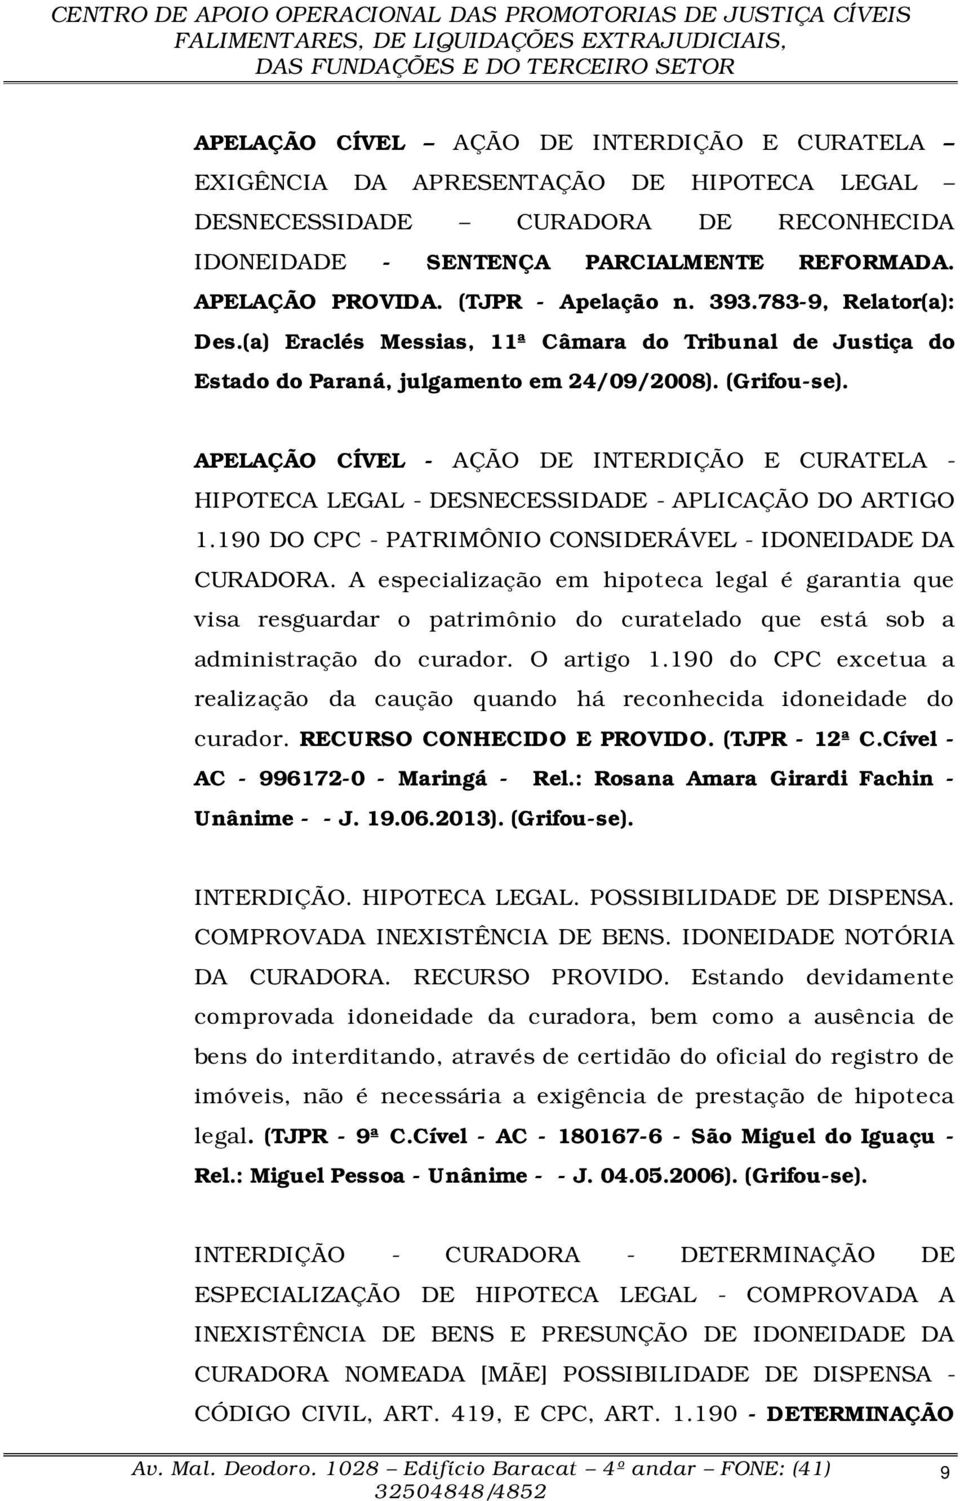 APELAÇÃO CÍVEL - AÇÃO DE INTERDIÇÃO E CURATELA - HIPOTECA LEGAL - DESNECESSIDADE - APLICAÇÃO DO ARTIGO 1.190 DO CPC - PATRIMÔNIO CONSIDERÁVEL - IDONEIDADE DA CURADORA.